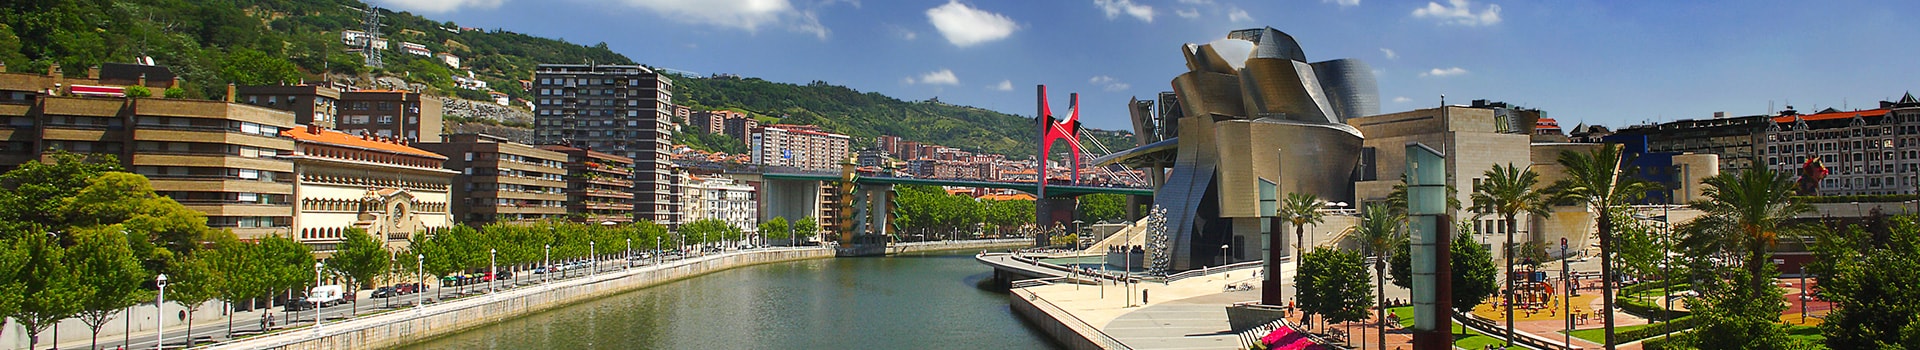 Granada - Bilbao